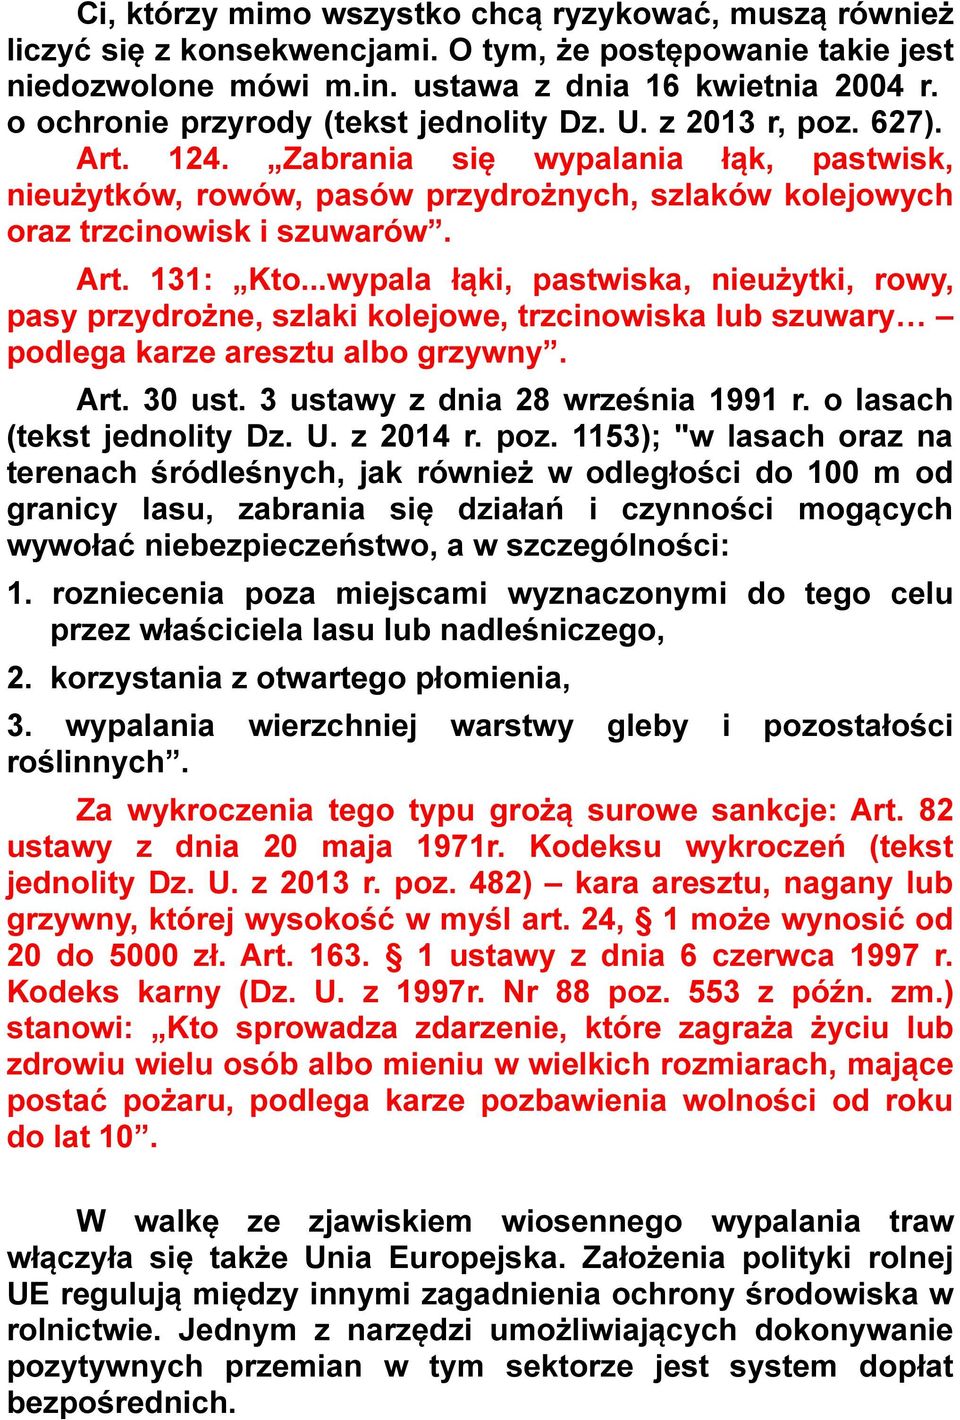 Art. 131: Kto...wypala łąki, pastwiska, nieużytki, rowy, pasy przydrożne, szlaki kolejowe, trzcinowiska lub szuwary podlega karze aresztu albo grzywny. Art. 30 ust. 3 ustawy z dnia 28 września 1991 r.